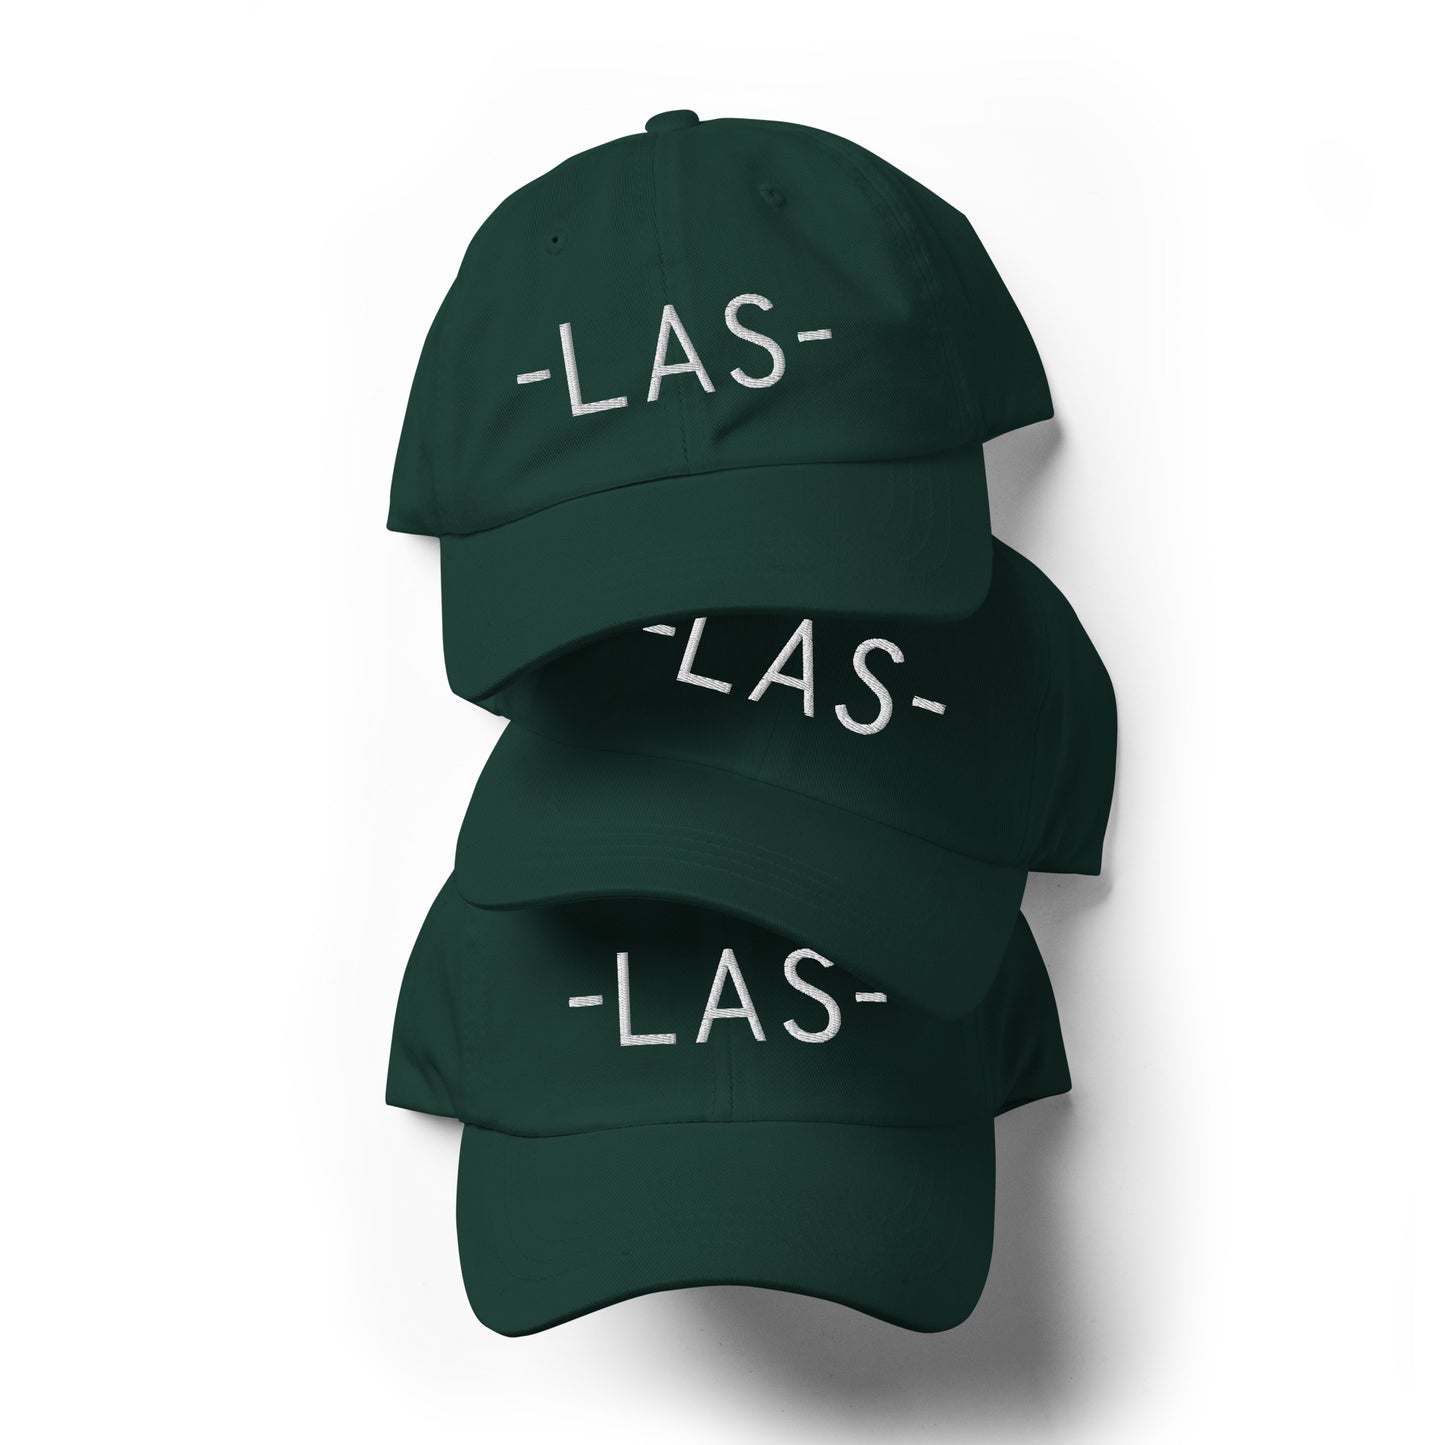 Souvenir Baseball Cap - White • LAS Las Vegas • YHM Designs - Image 05